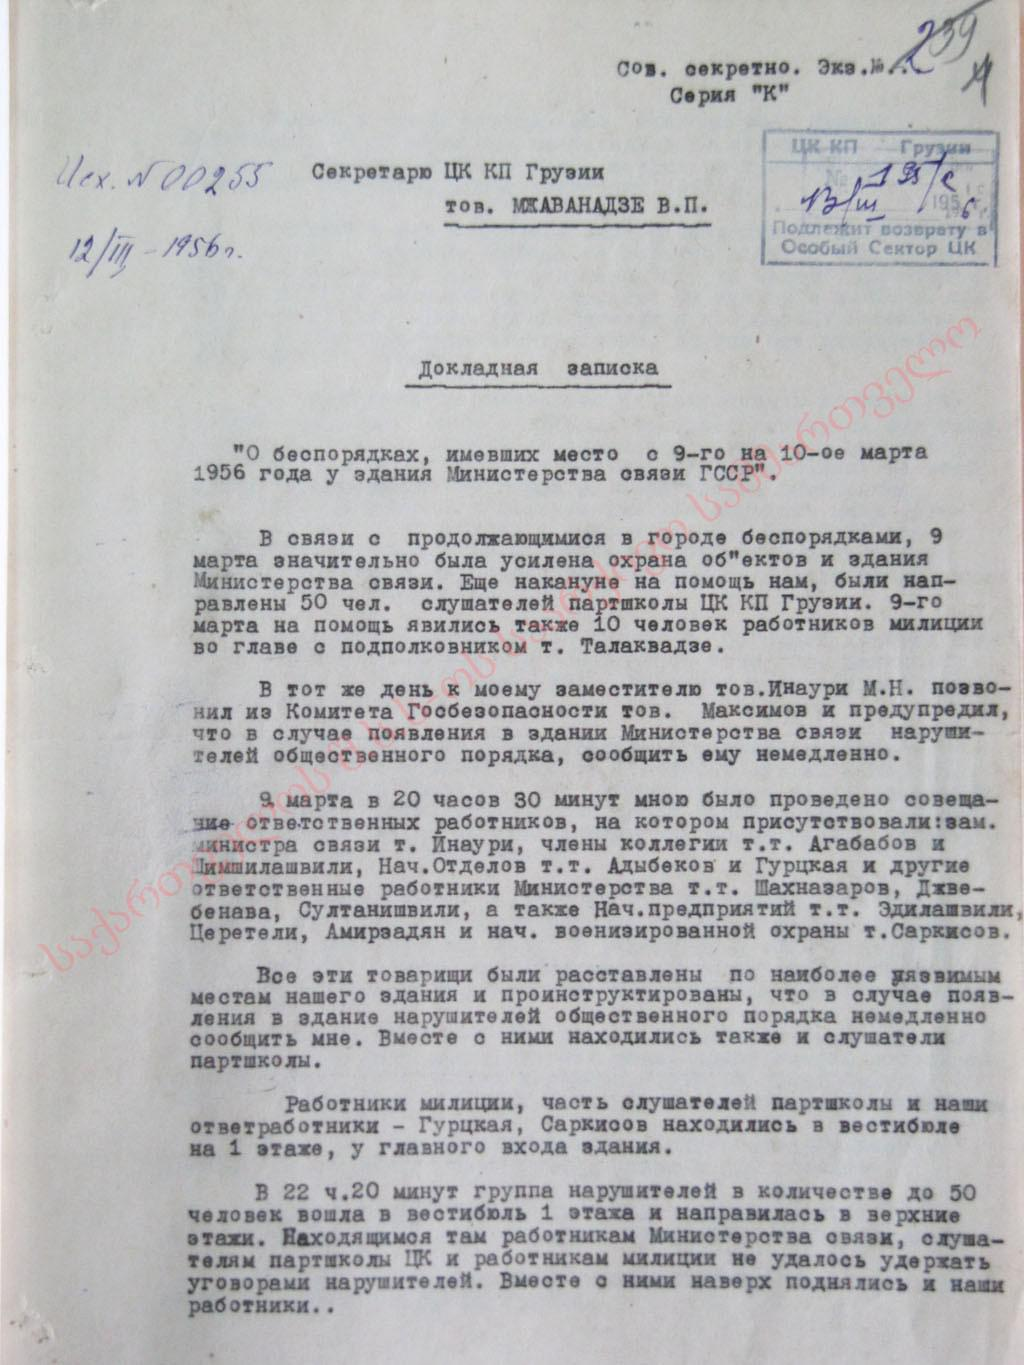 Докладная записка министра связи ГССР Христесашвили Г.А. от 12 марта 1956 г. о событиях у здания Министерства связи